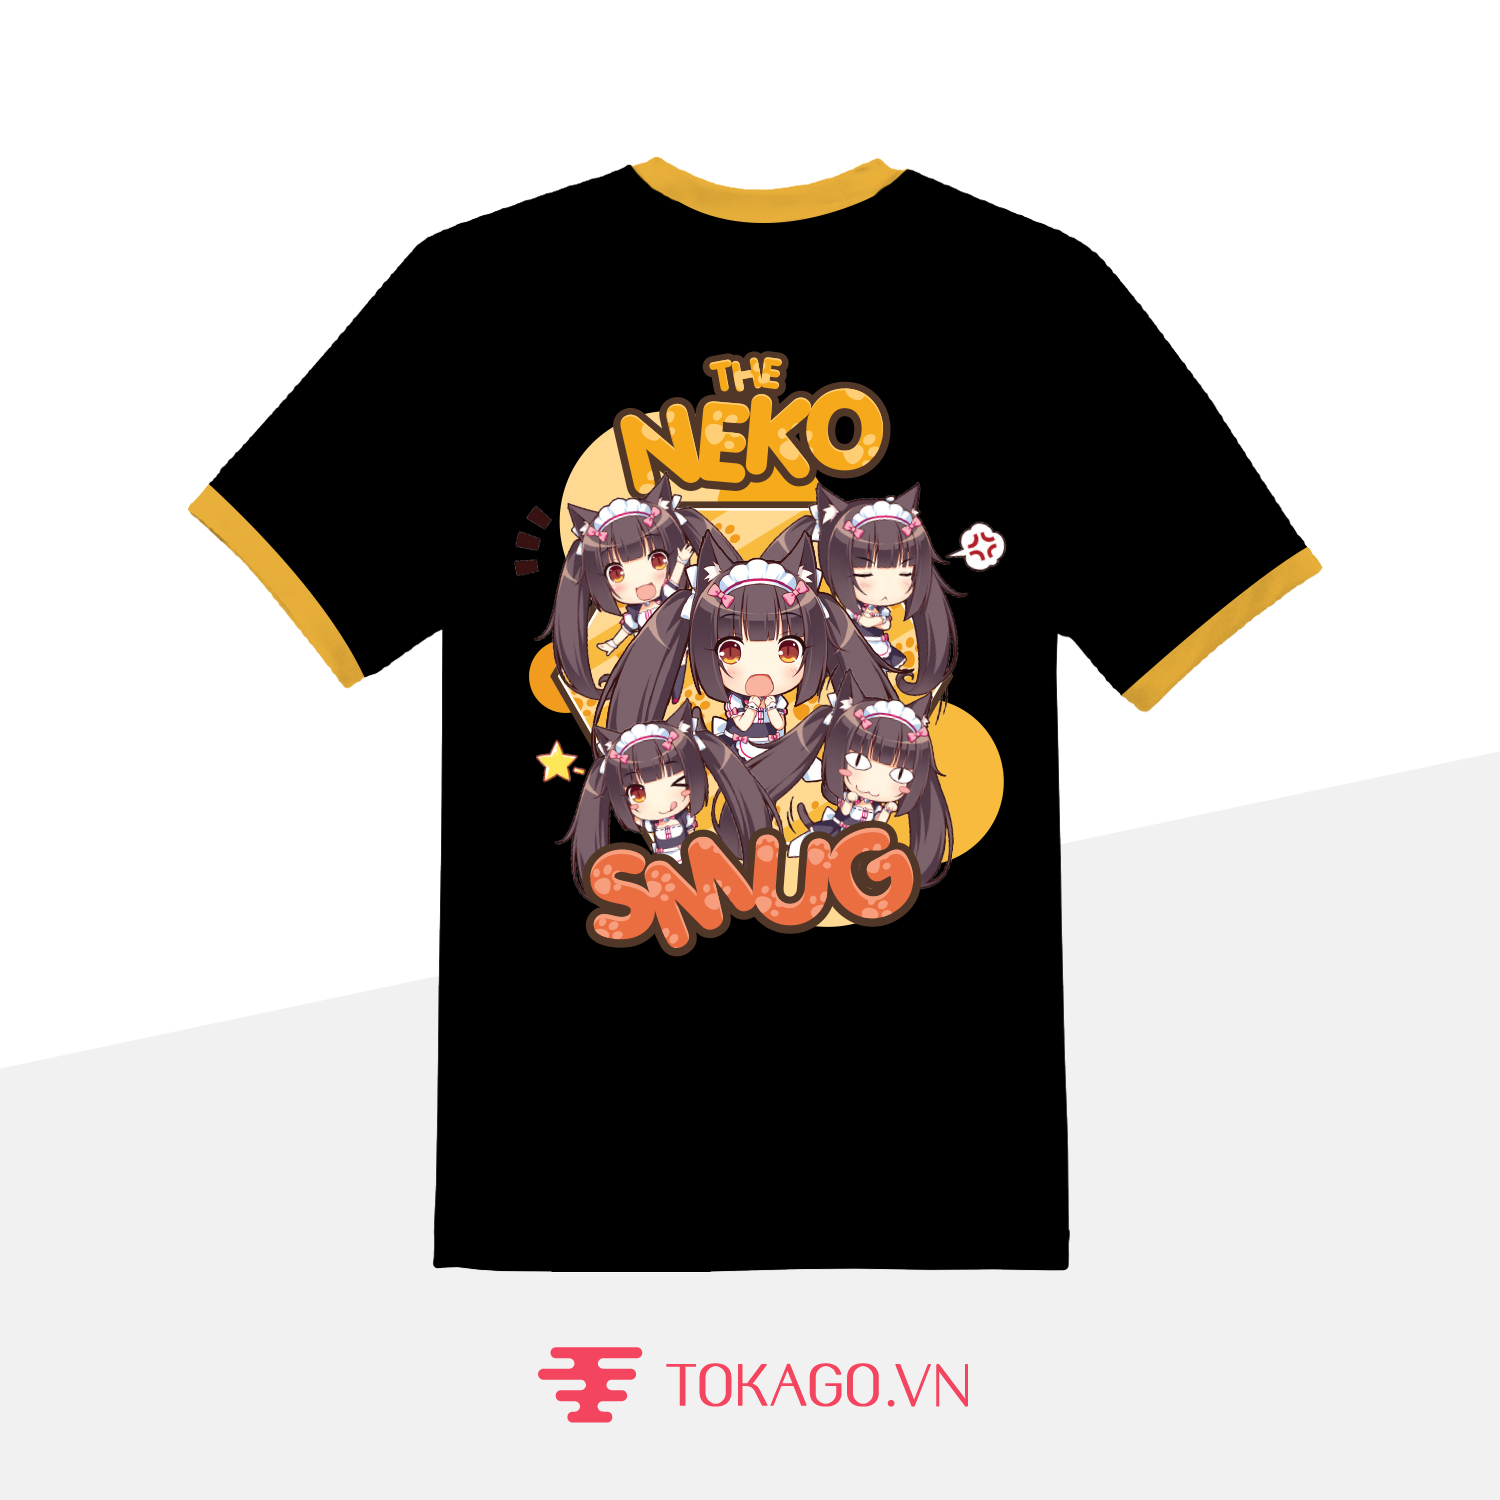 The Neko Smug T-Shirt